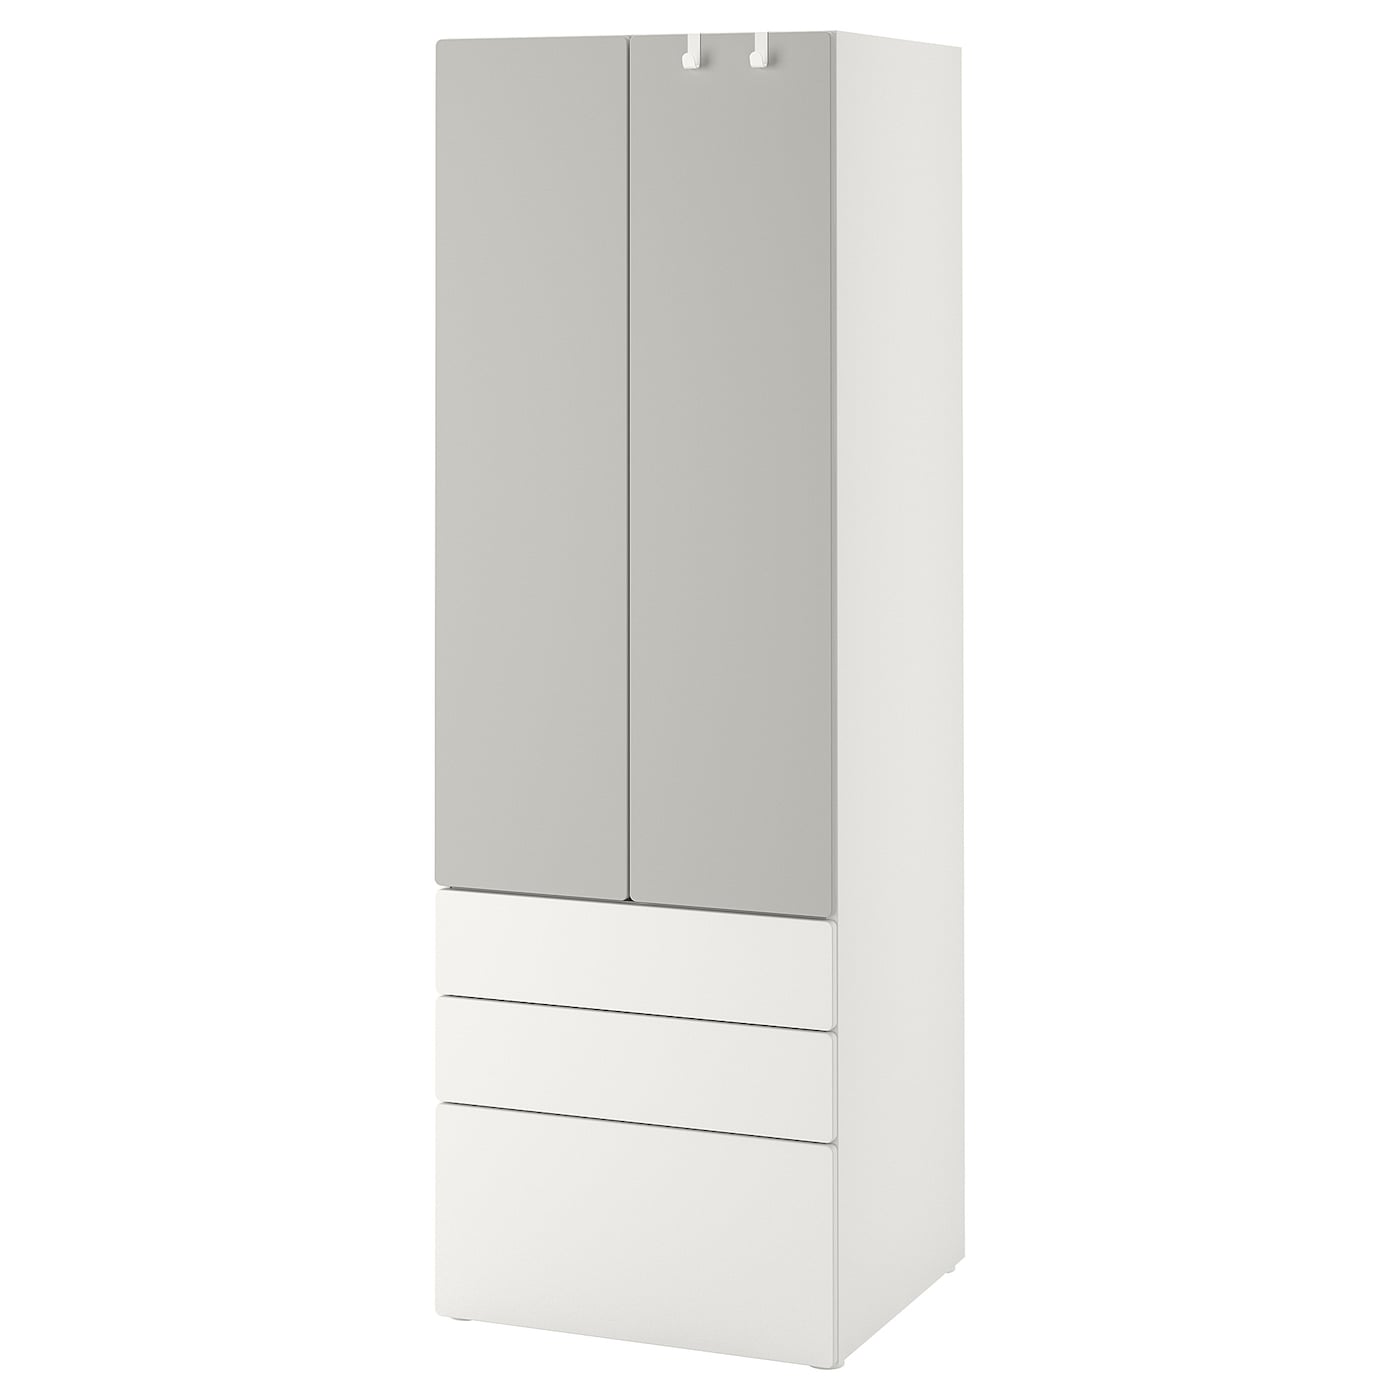 Шкаф - PLATSA/ SMÅSTAD / SMАSTAD  IKEA/ ПЛАТСА/СМОСТАД  ИКЕА, 60x57x181 см, белый/серый